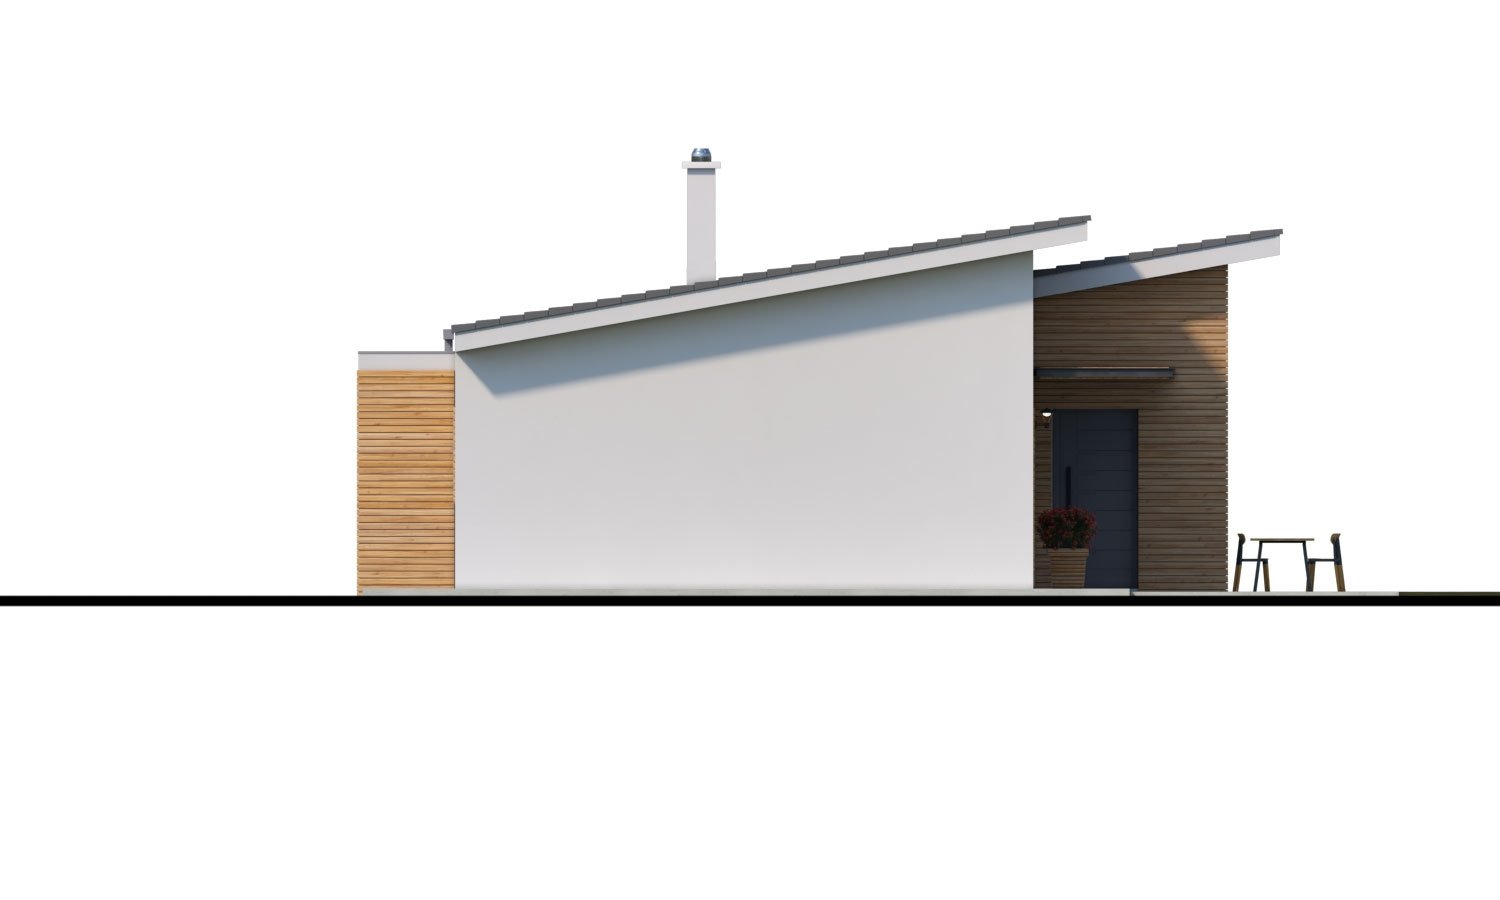 Zrkadlový pohľad 2. - Moderní malý zděný rodinný dům s garáží, pultovou střechou. Možná realizace s dvojgaráží, nebo bez garáže. Vhodný i jako dvojdům nebo do řadové zástavby.